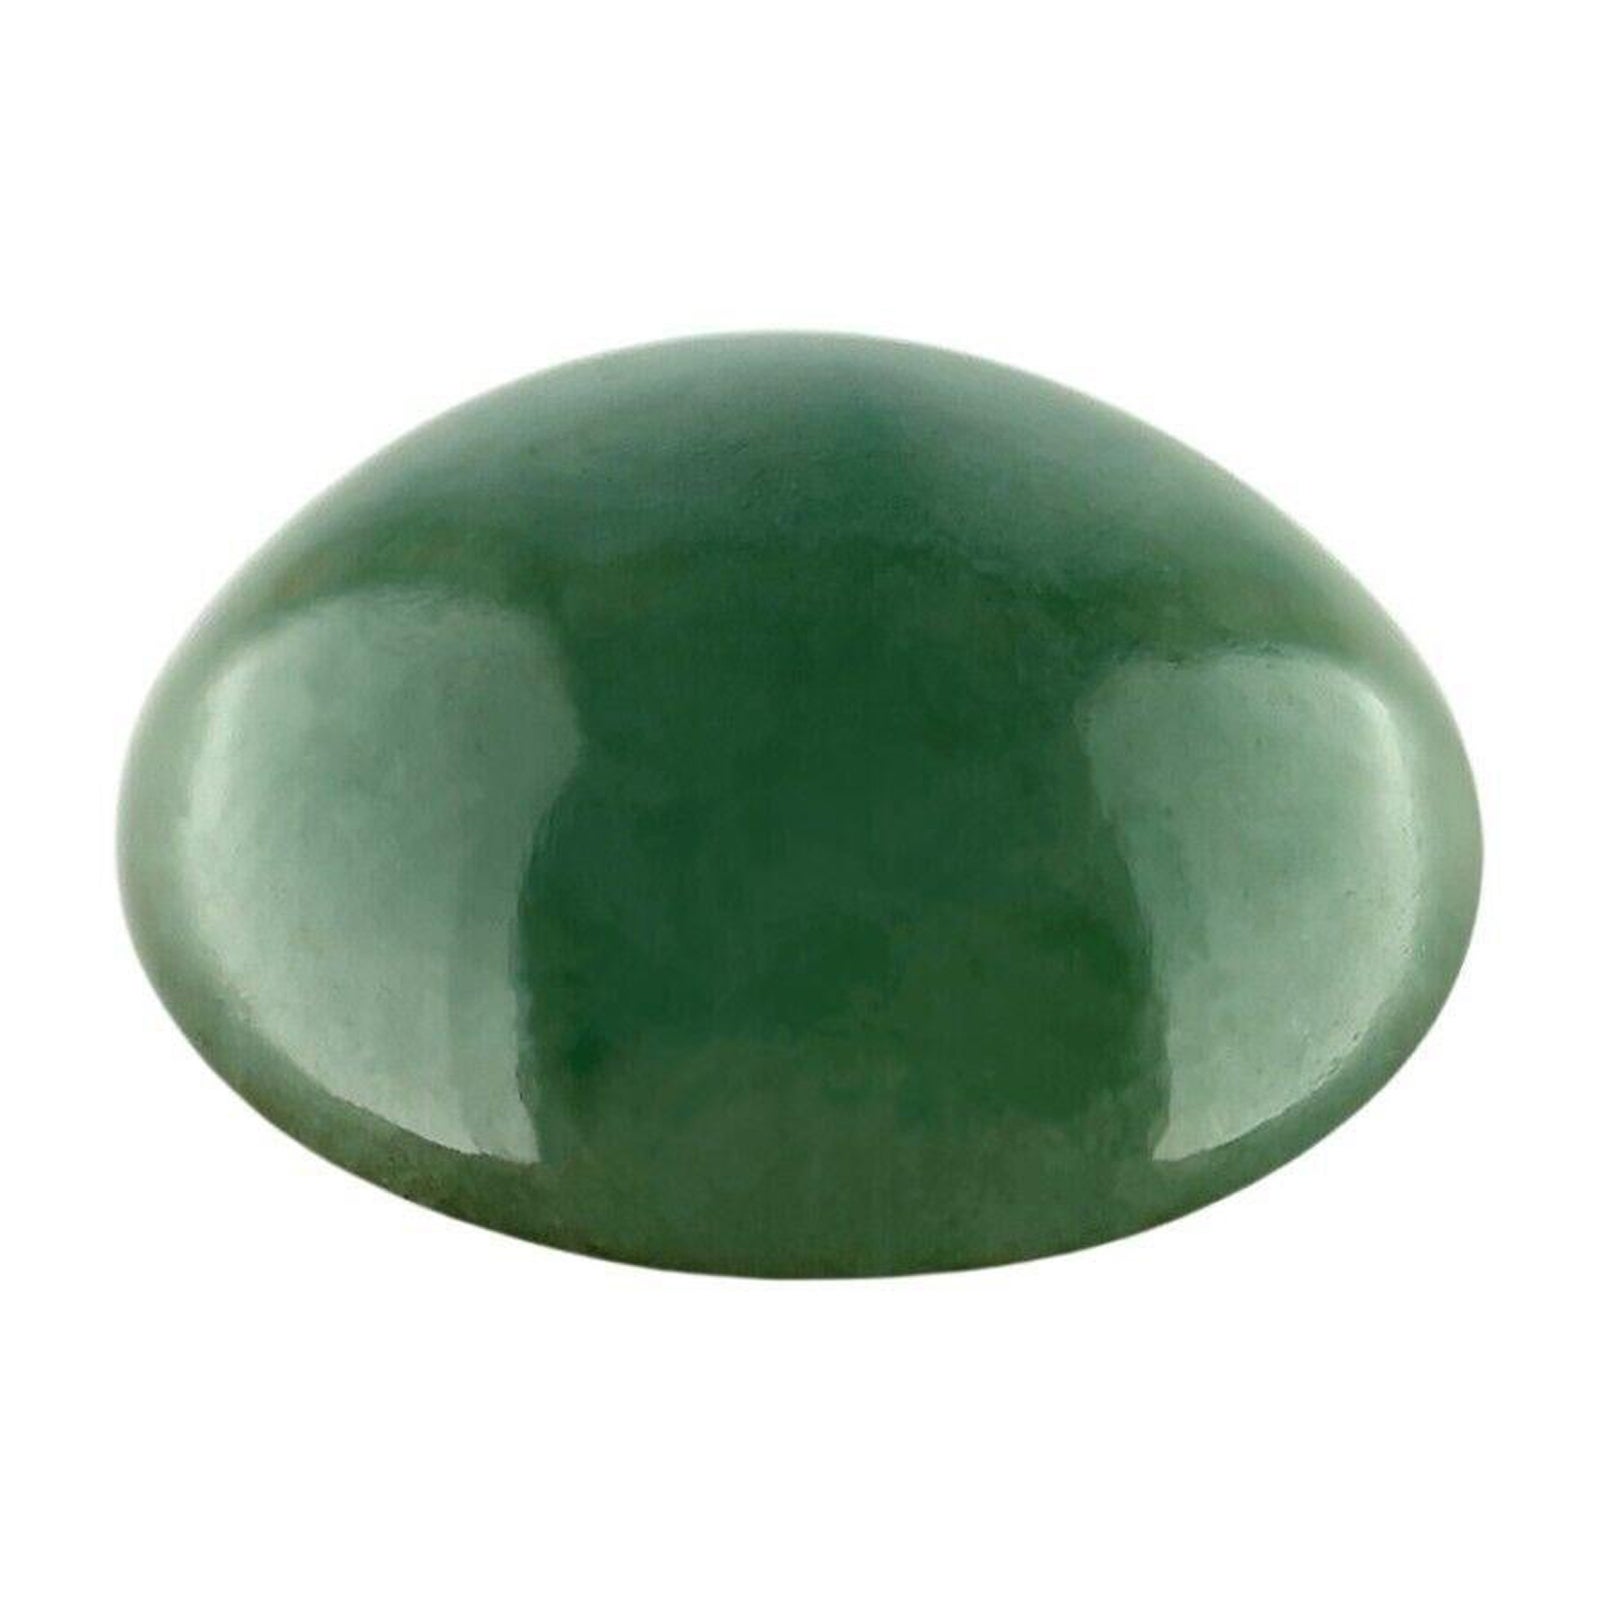 IGI zertifiziert 6.67Ct natürlichen grünen Jadeit Jade 'A' Grade Oval Cabochon Edelstein